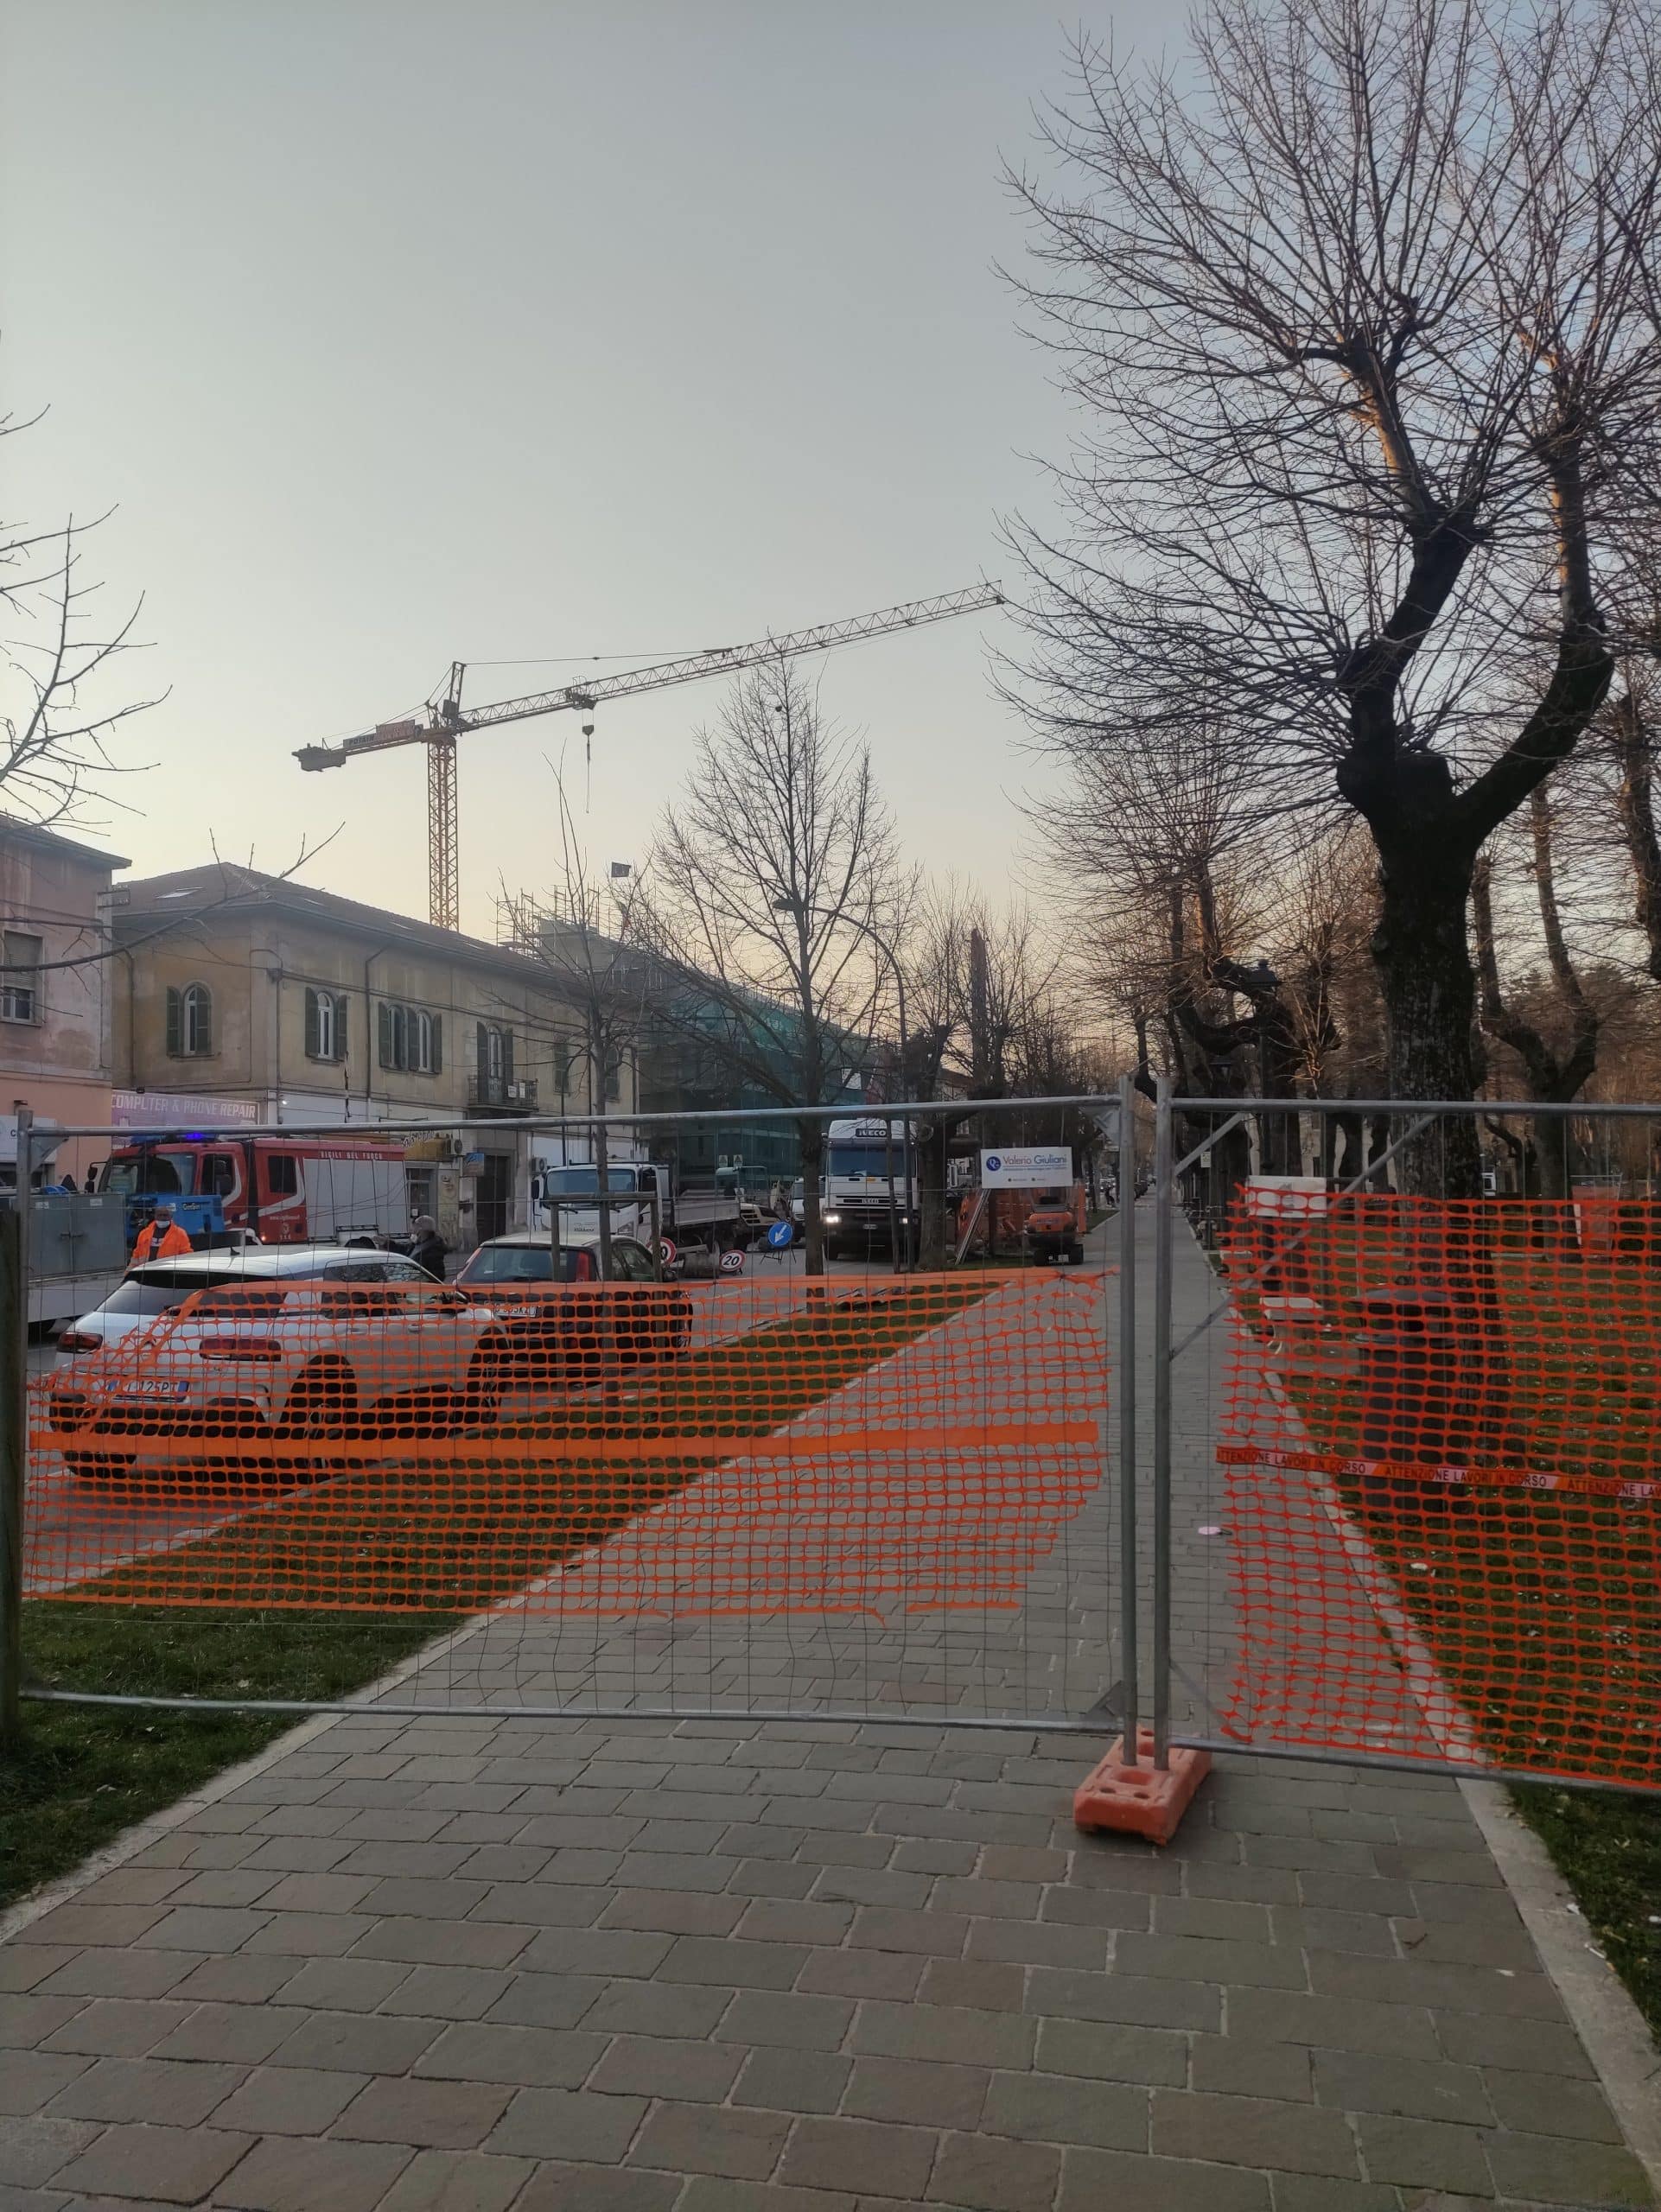 Rottura di un tubo del gas a piazza Torlonia, Vigili del Fuoco sul posto: transennata l'area e chiuso il parco giochi per i bambini